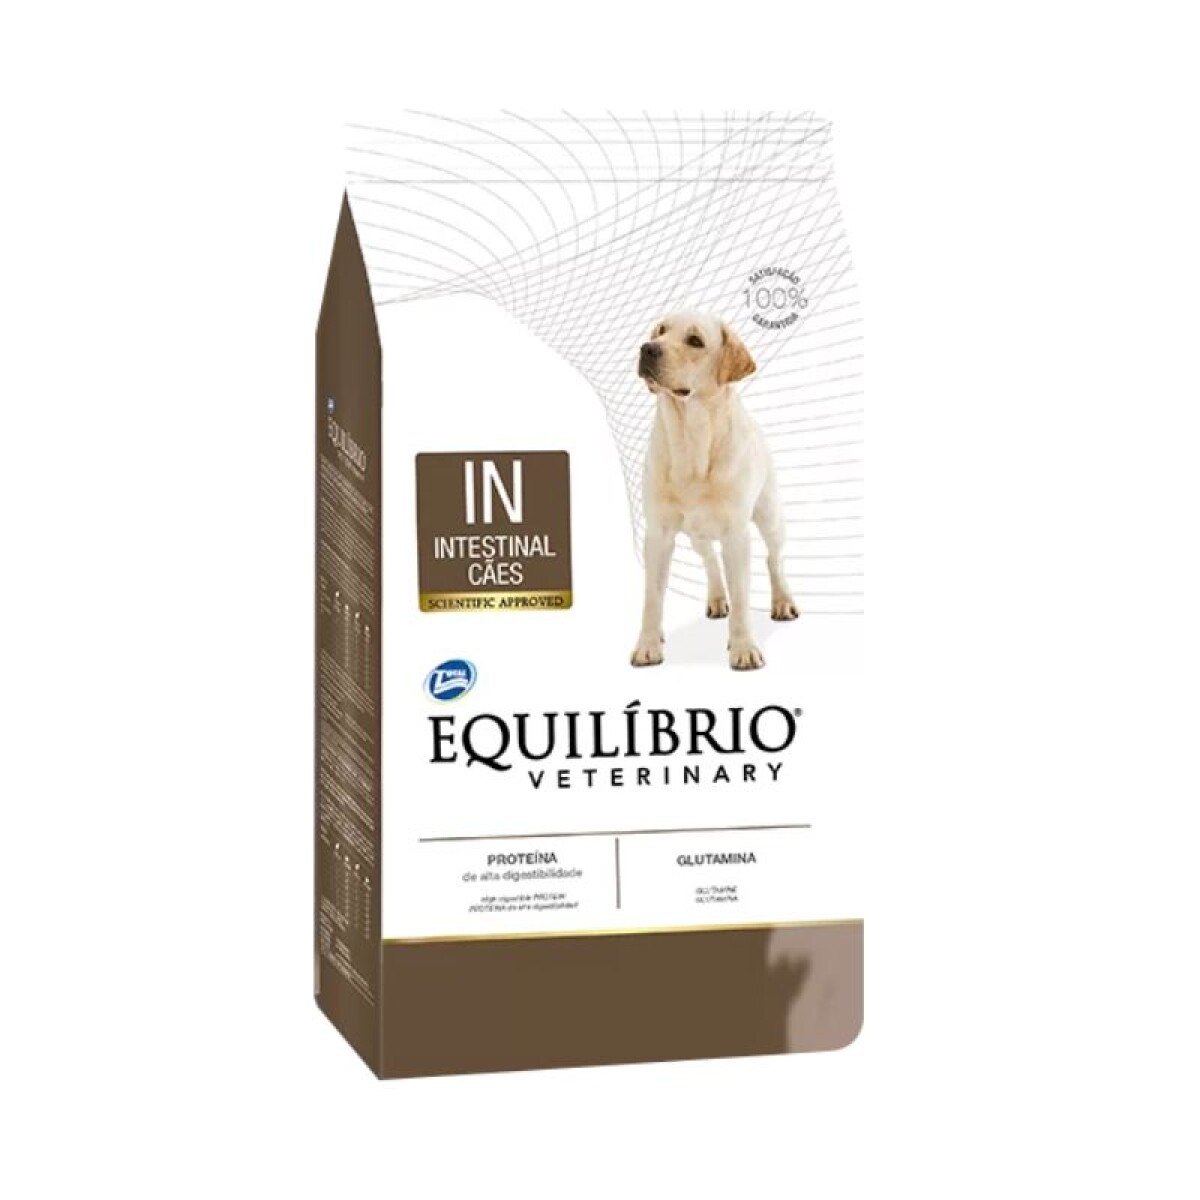 EQUILIBRIO INTESTINAL DOG 7.5KG - Equilibrio Intestinal Dog 7.5kg 